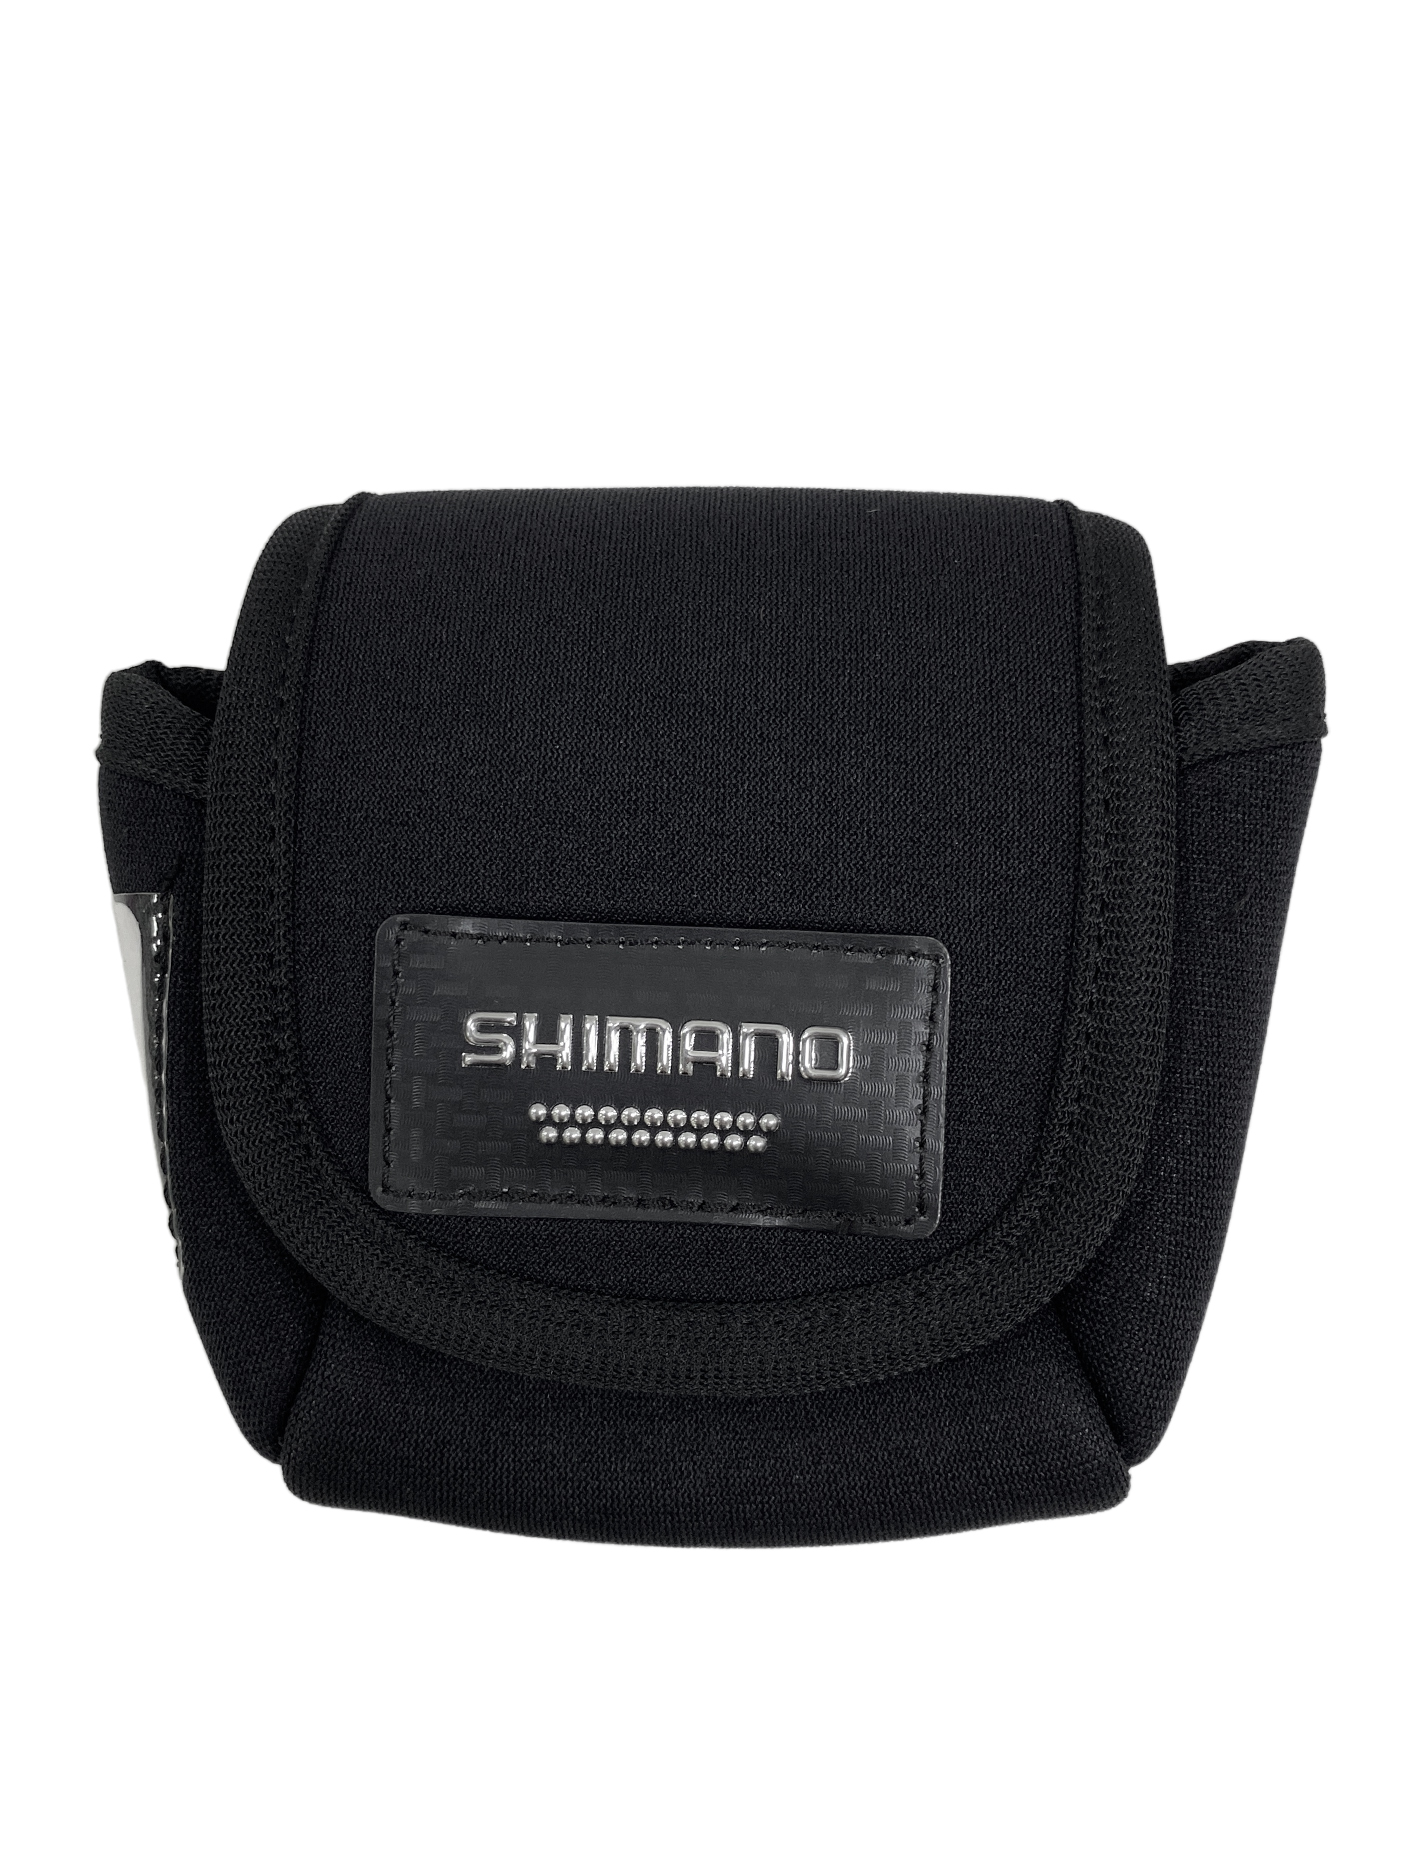 Чехол Shimano PC-018L для шпули black L - фото 1